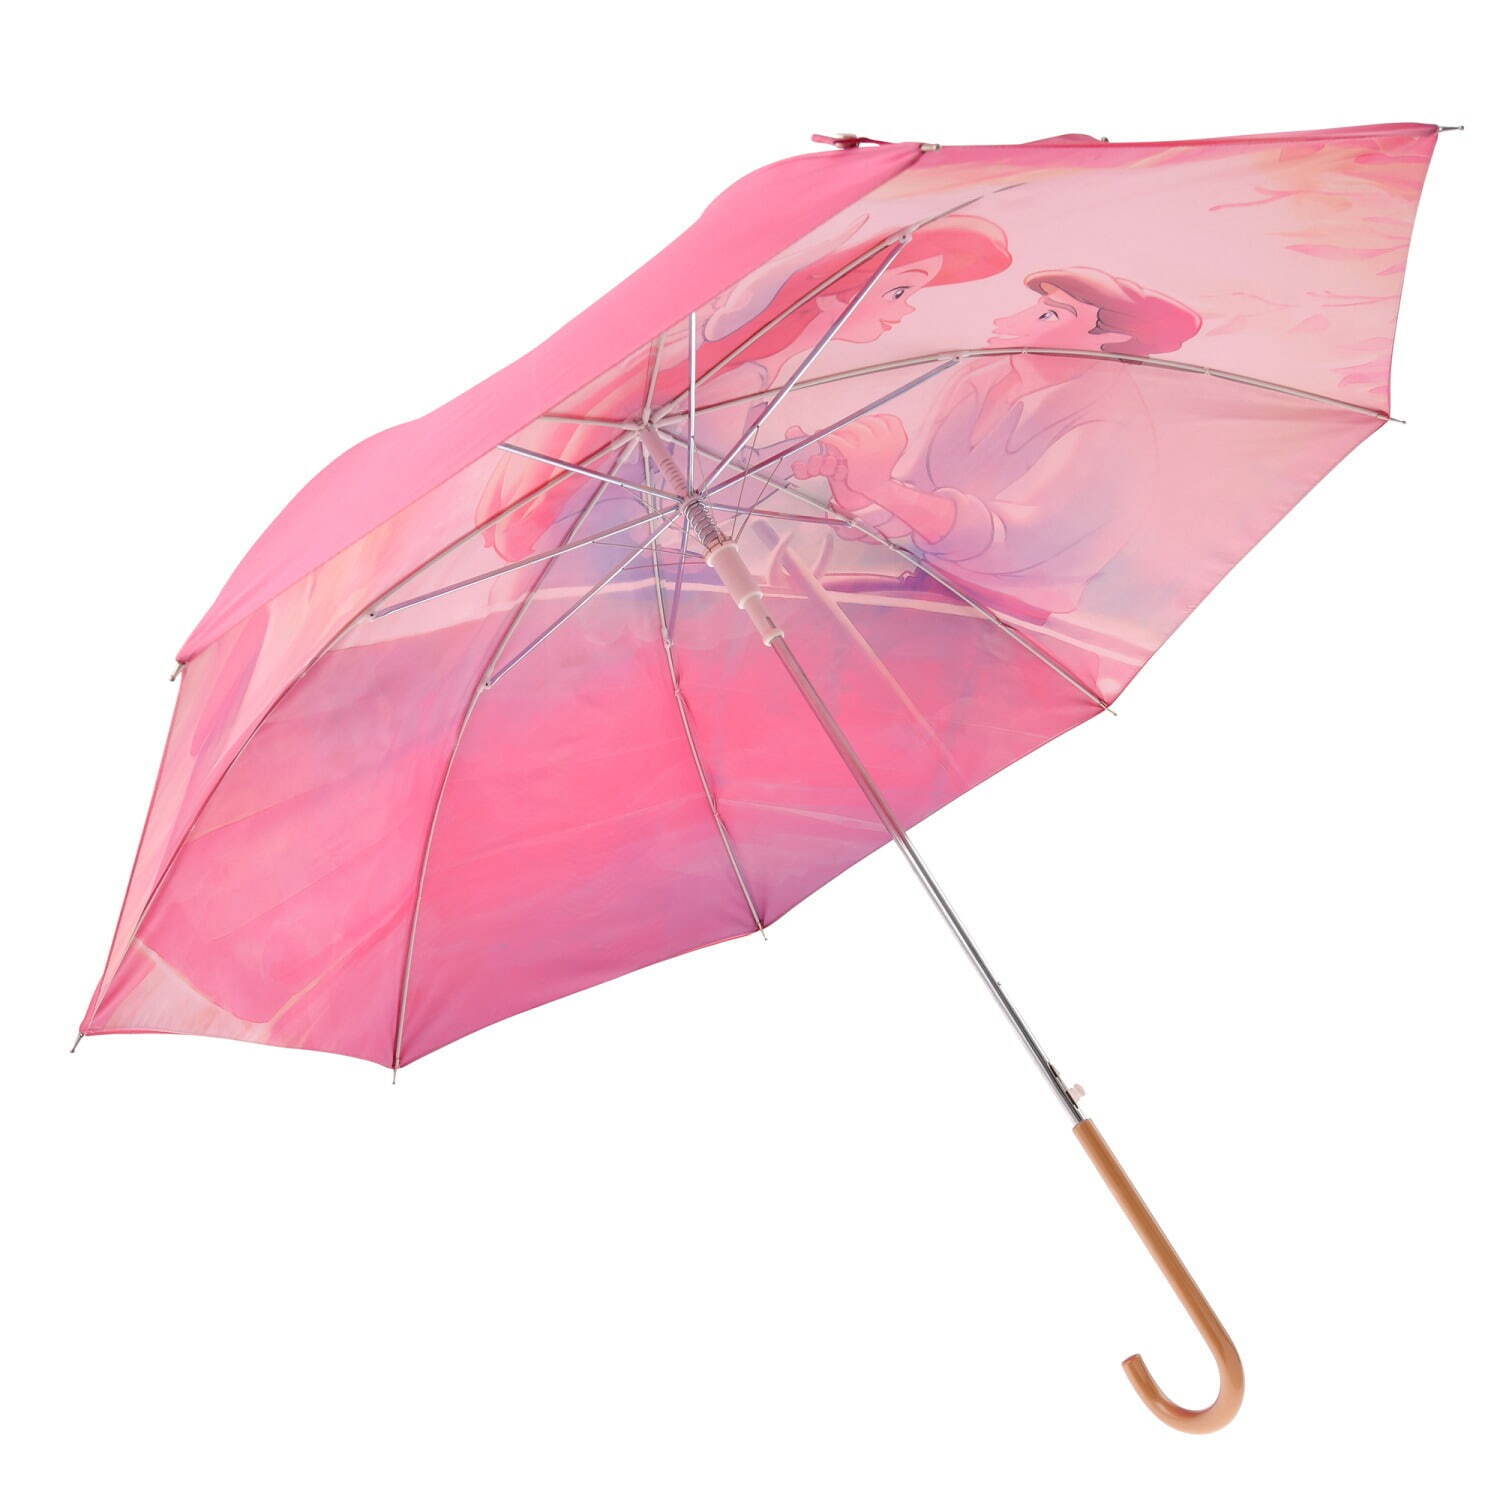 晴雨兼用傘 3,410円
© Disney